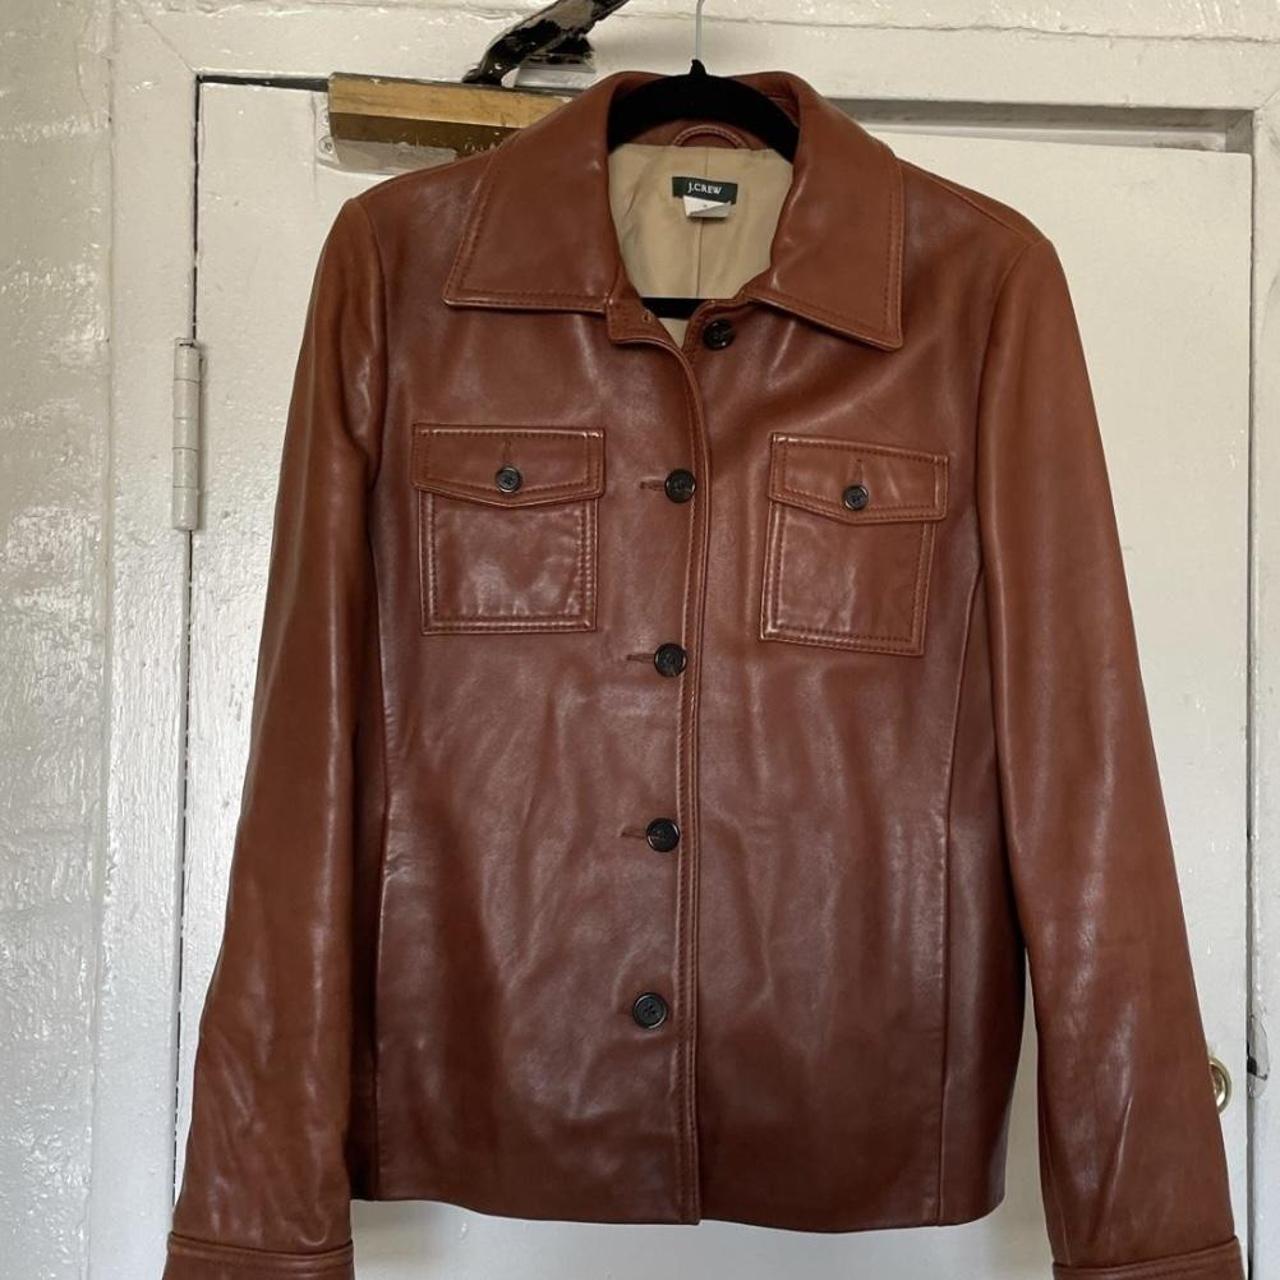 brown leather jacket vintage Brand: J Crew Size:... - Depop